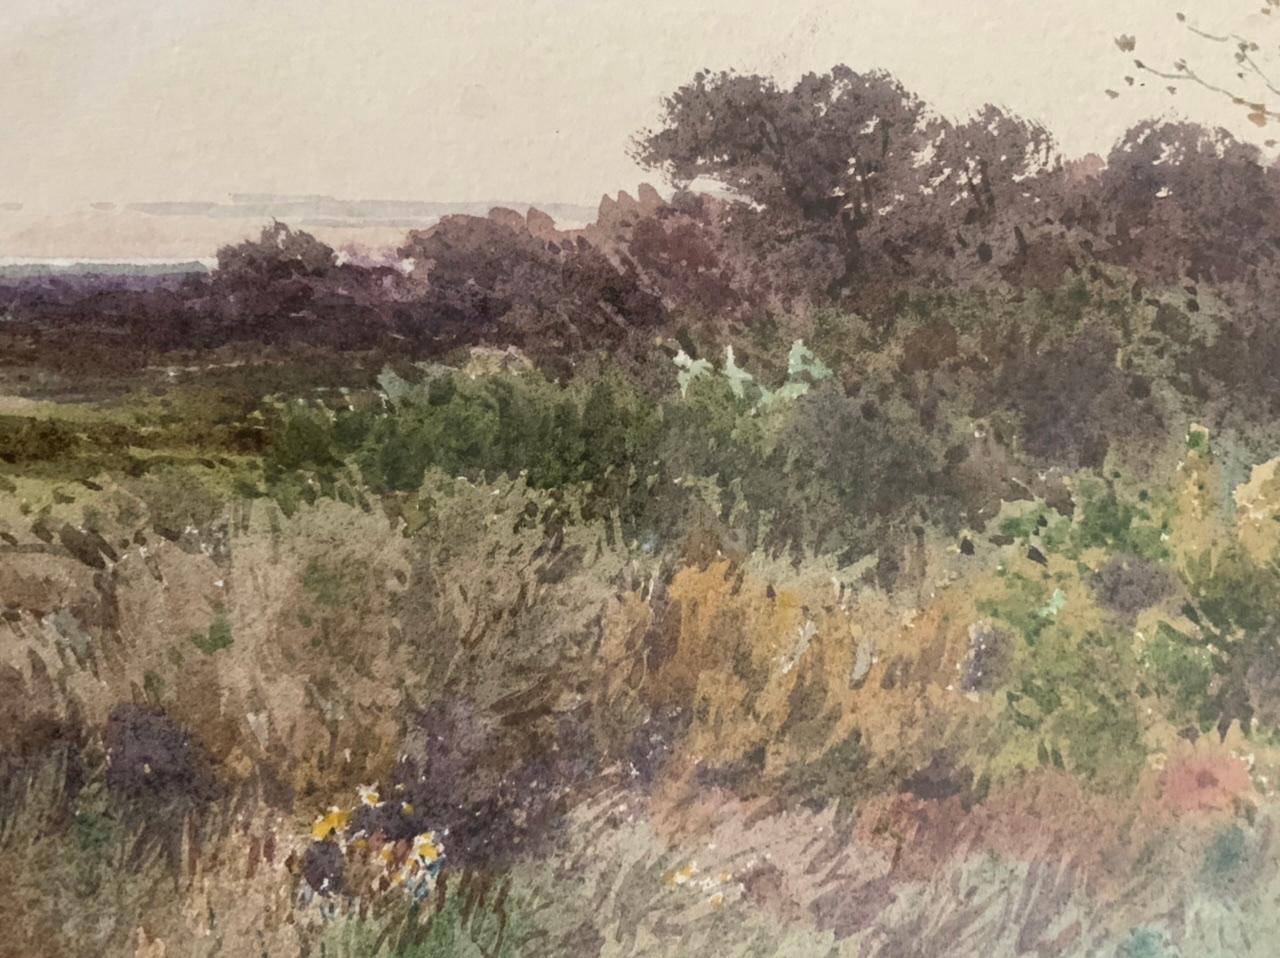 Landschaft einer Ebene in Aquarell auf Papier. Dieses Gemälde in warmen Farben zeigt eine baumartige Vegetation, die sich im Rhythmus des Windes zu bewegen scheint. 

Entworfen von dem französischen Maler Louis Alphonse Combe-Velluet (1842-1902).